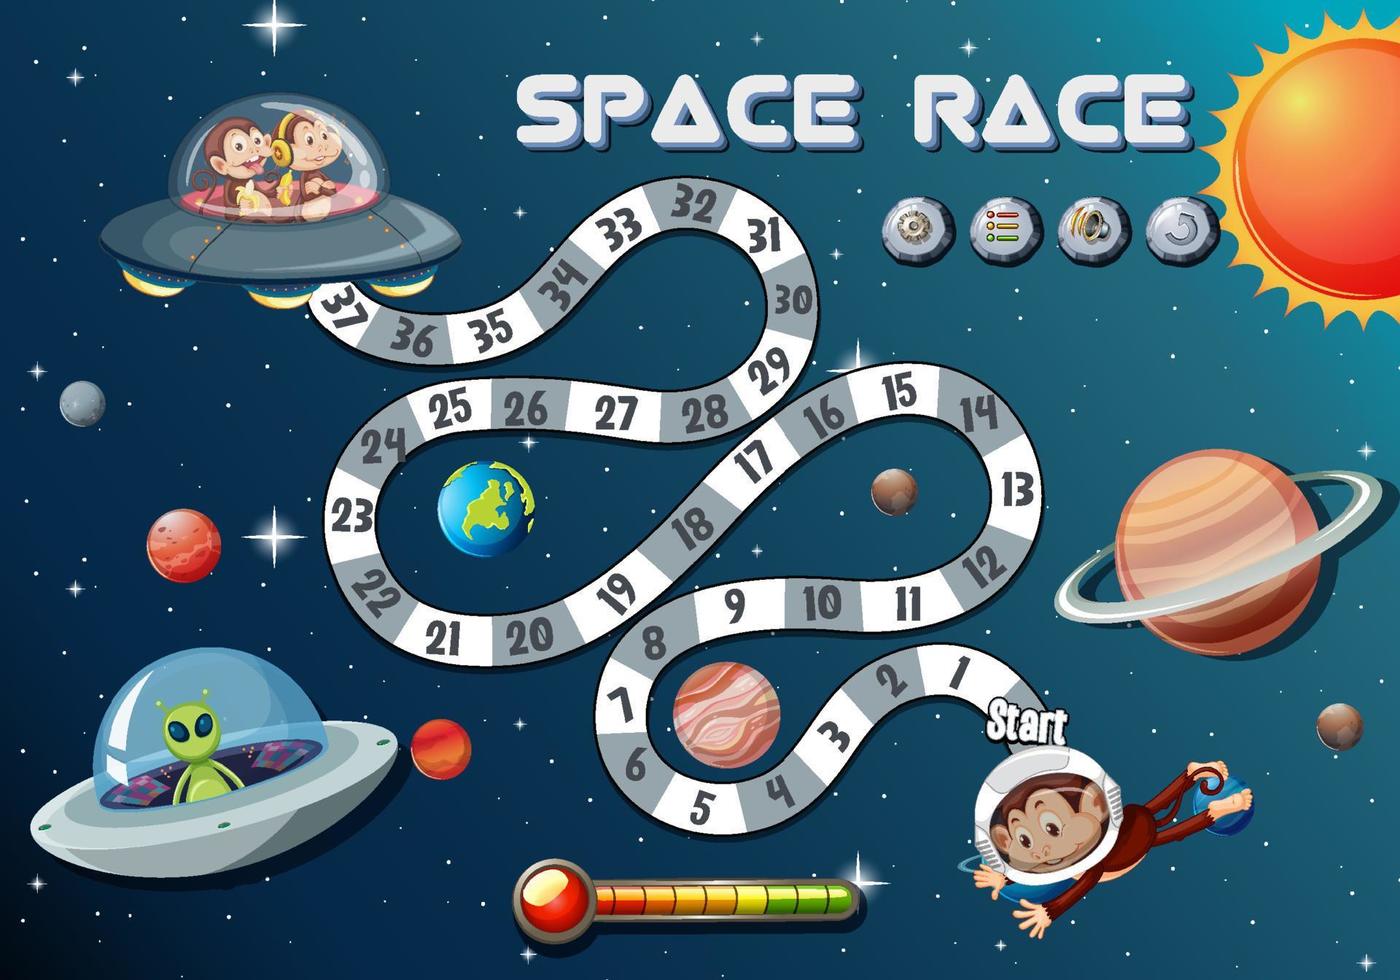 modèle de jeu de comptage de nombres avec thème de course spatiale vecteur